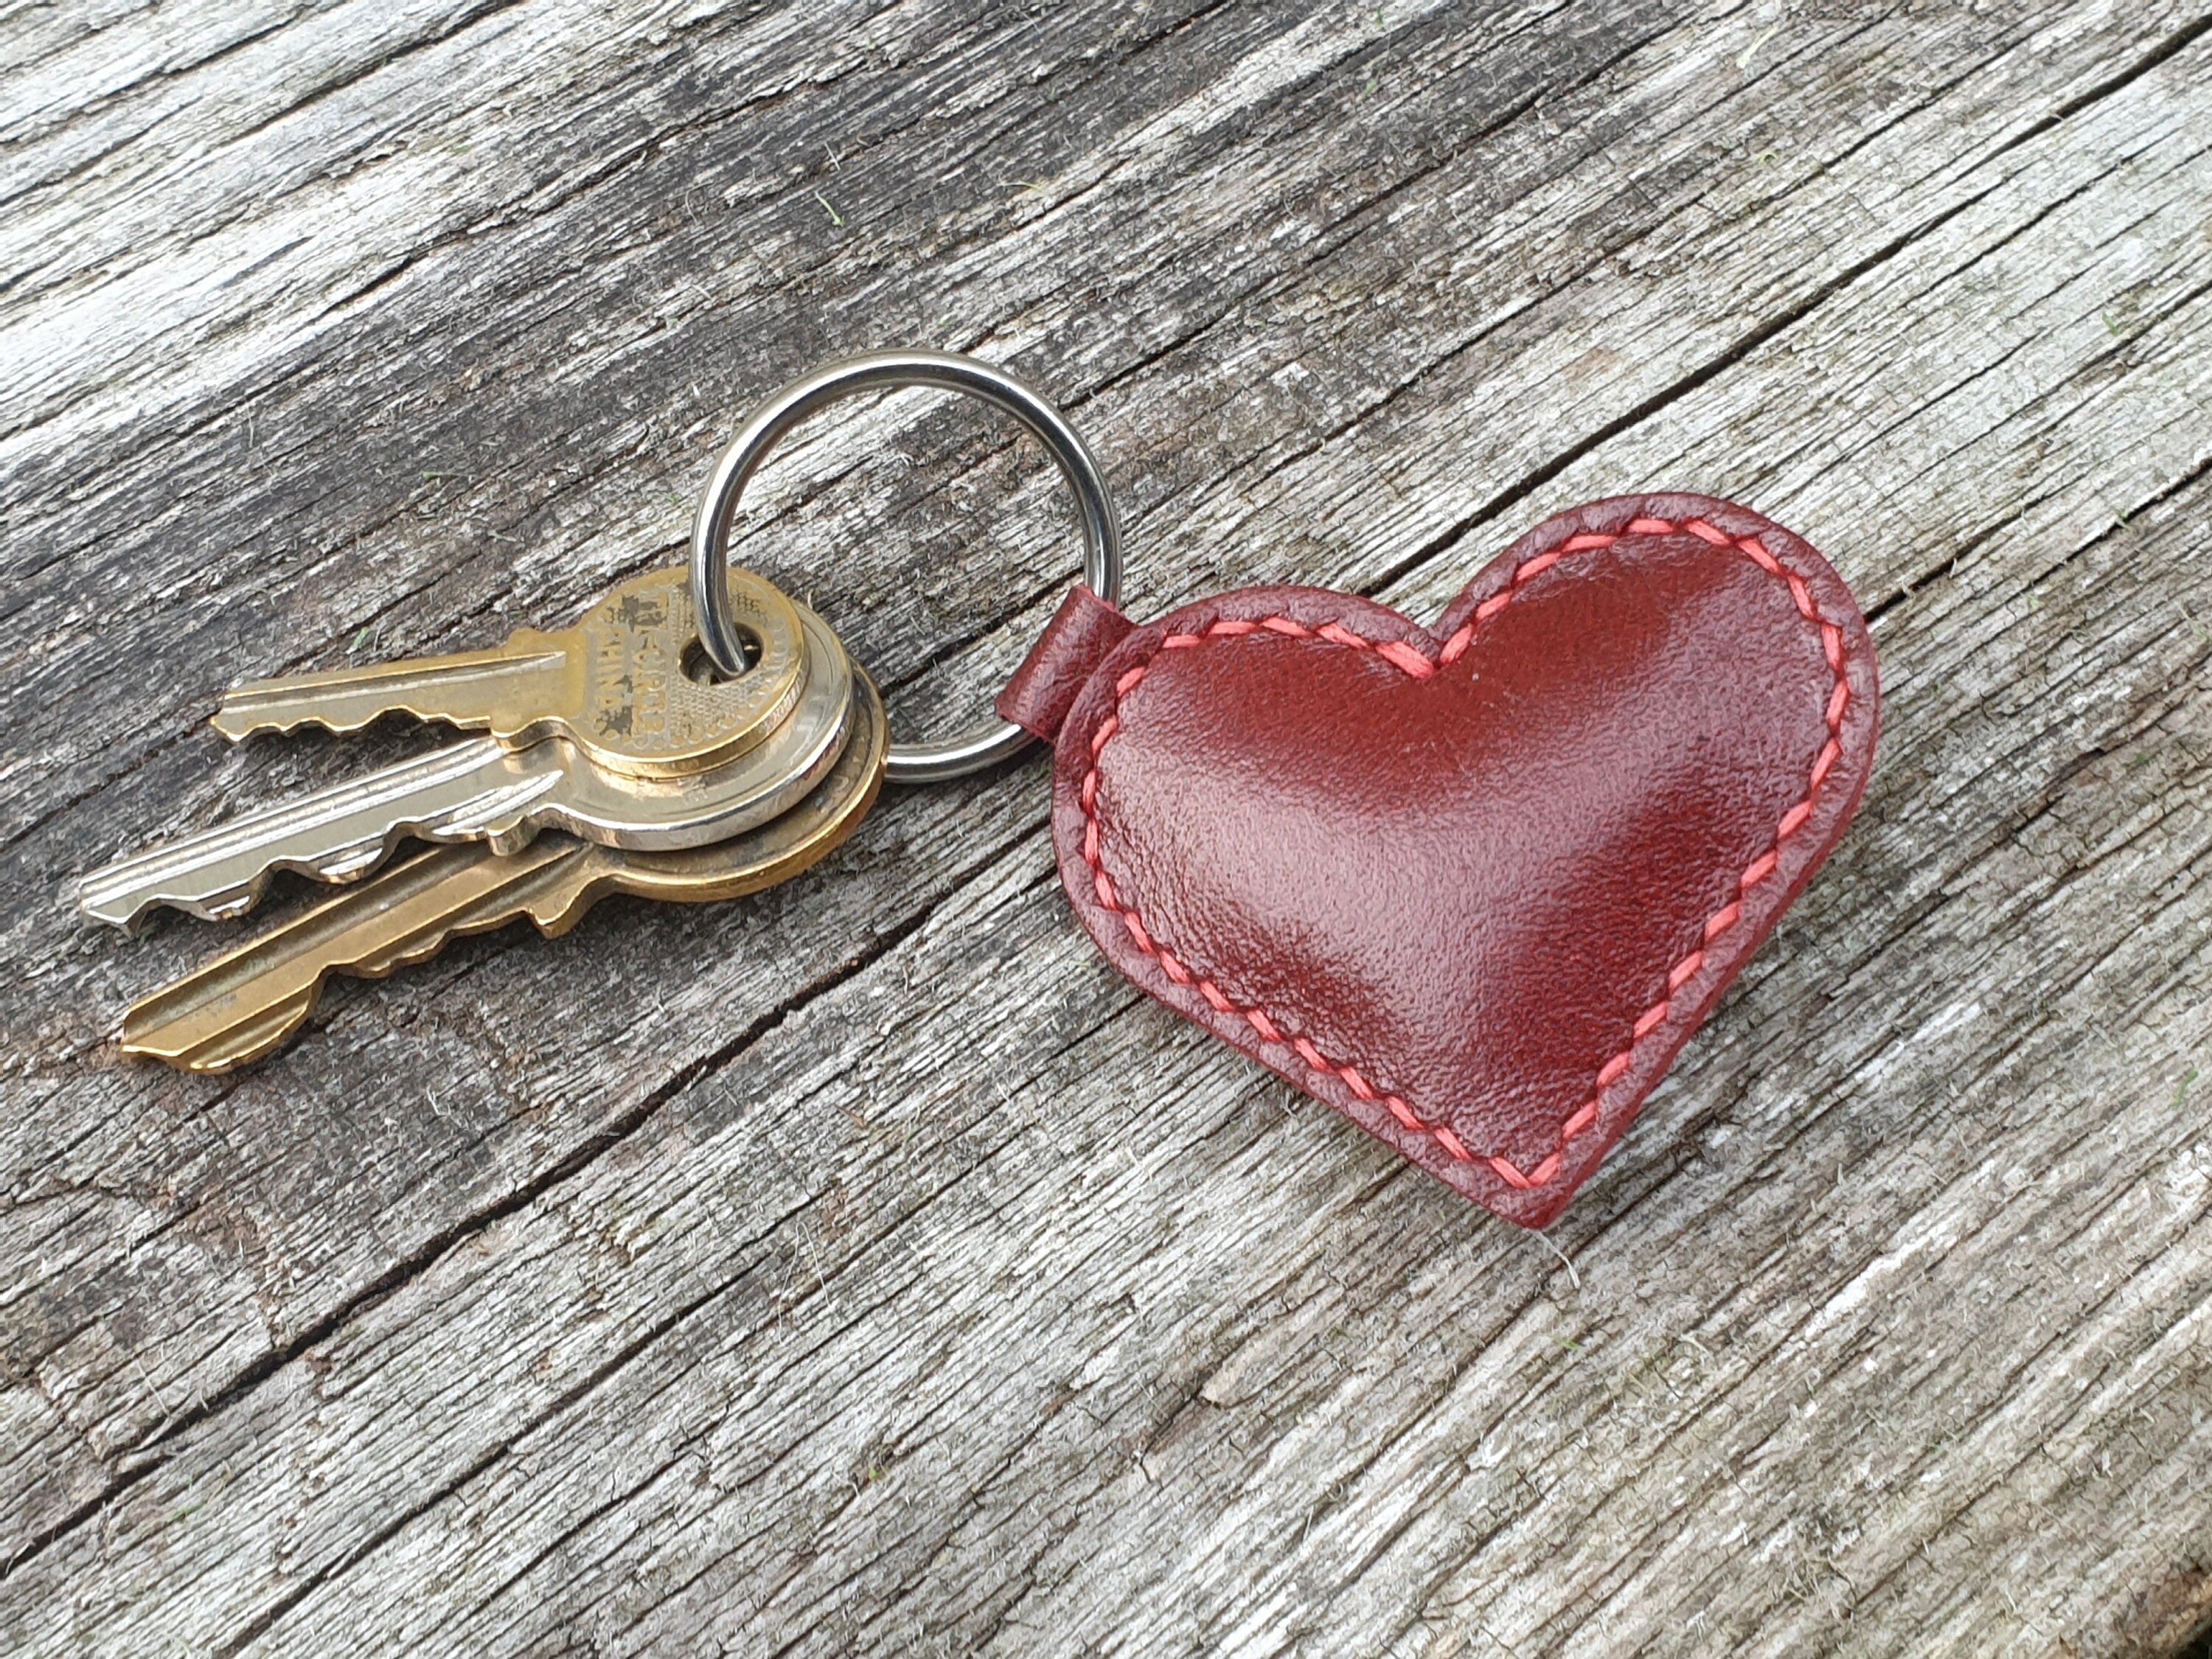 Genuine Leather Heart Shape Key Chain – ID Pop Shop